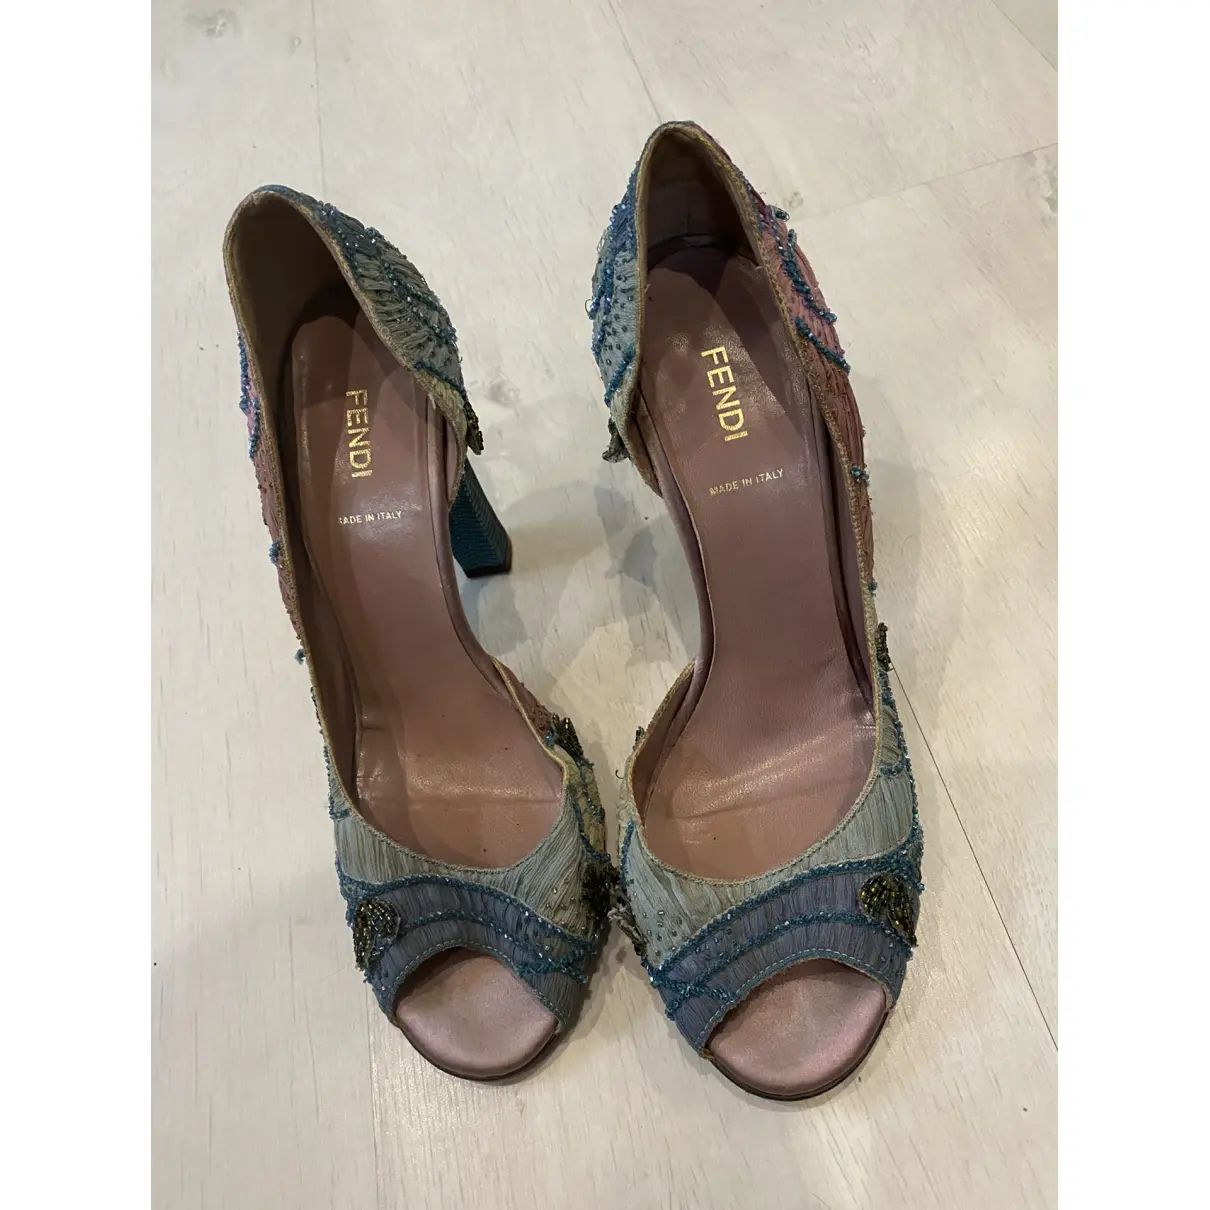 Buy Fendi Cloth heels online - Vintage